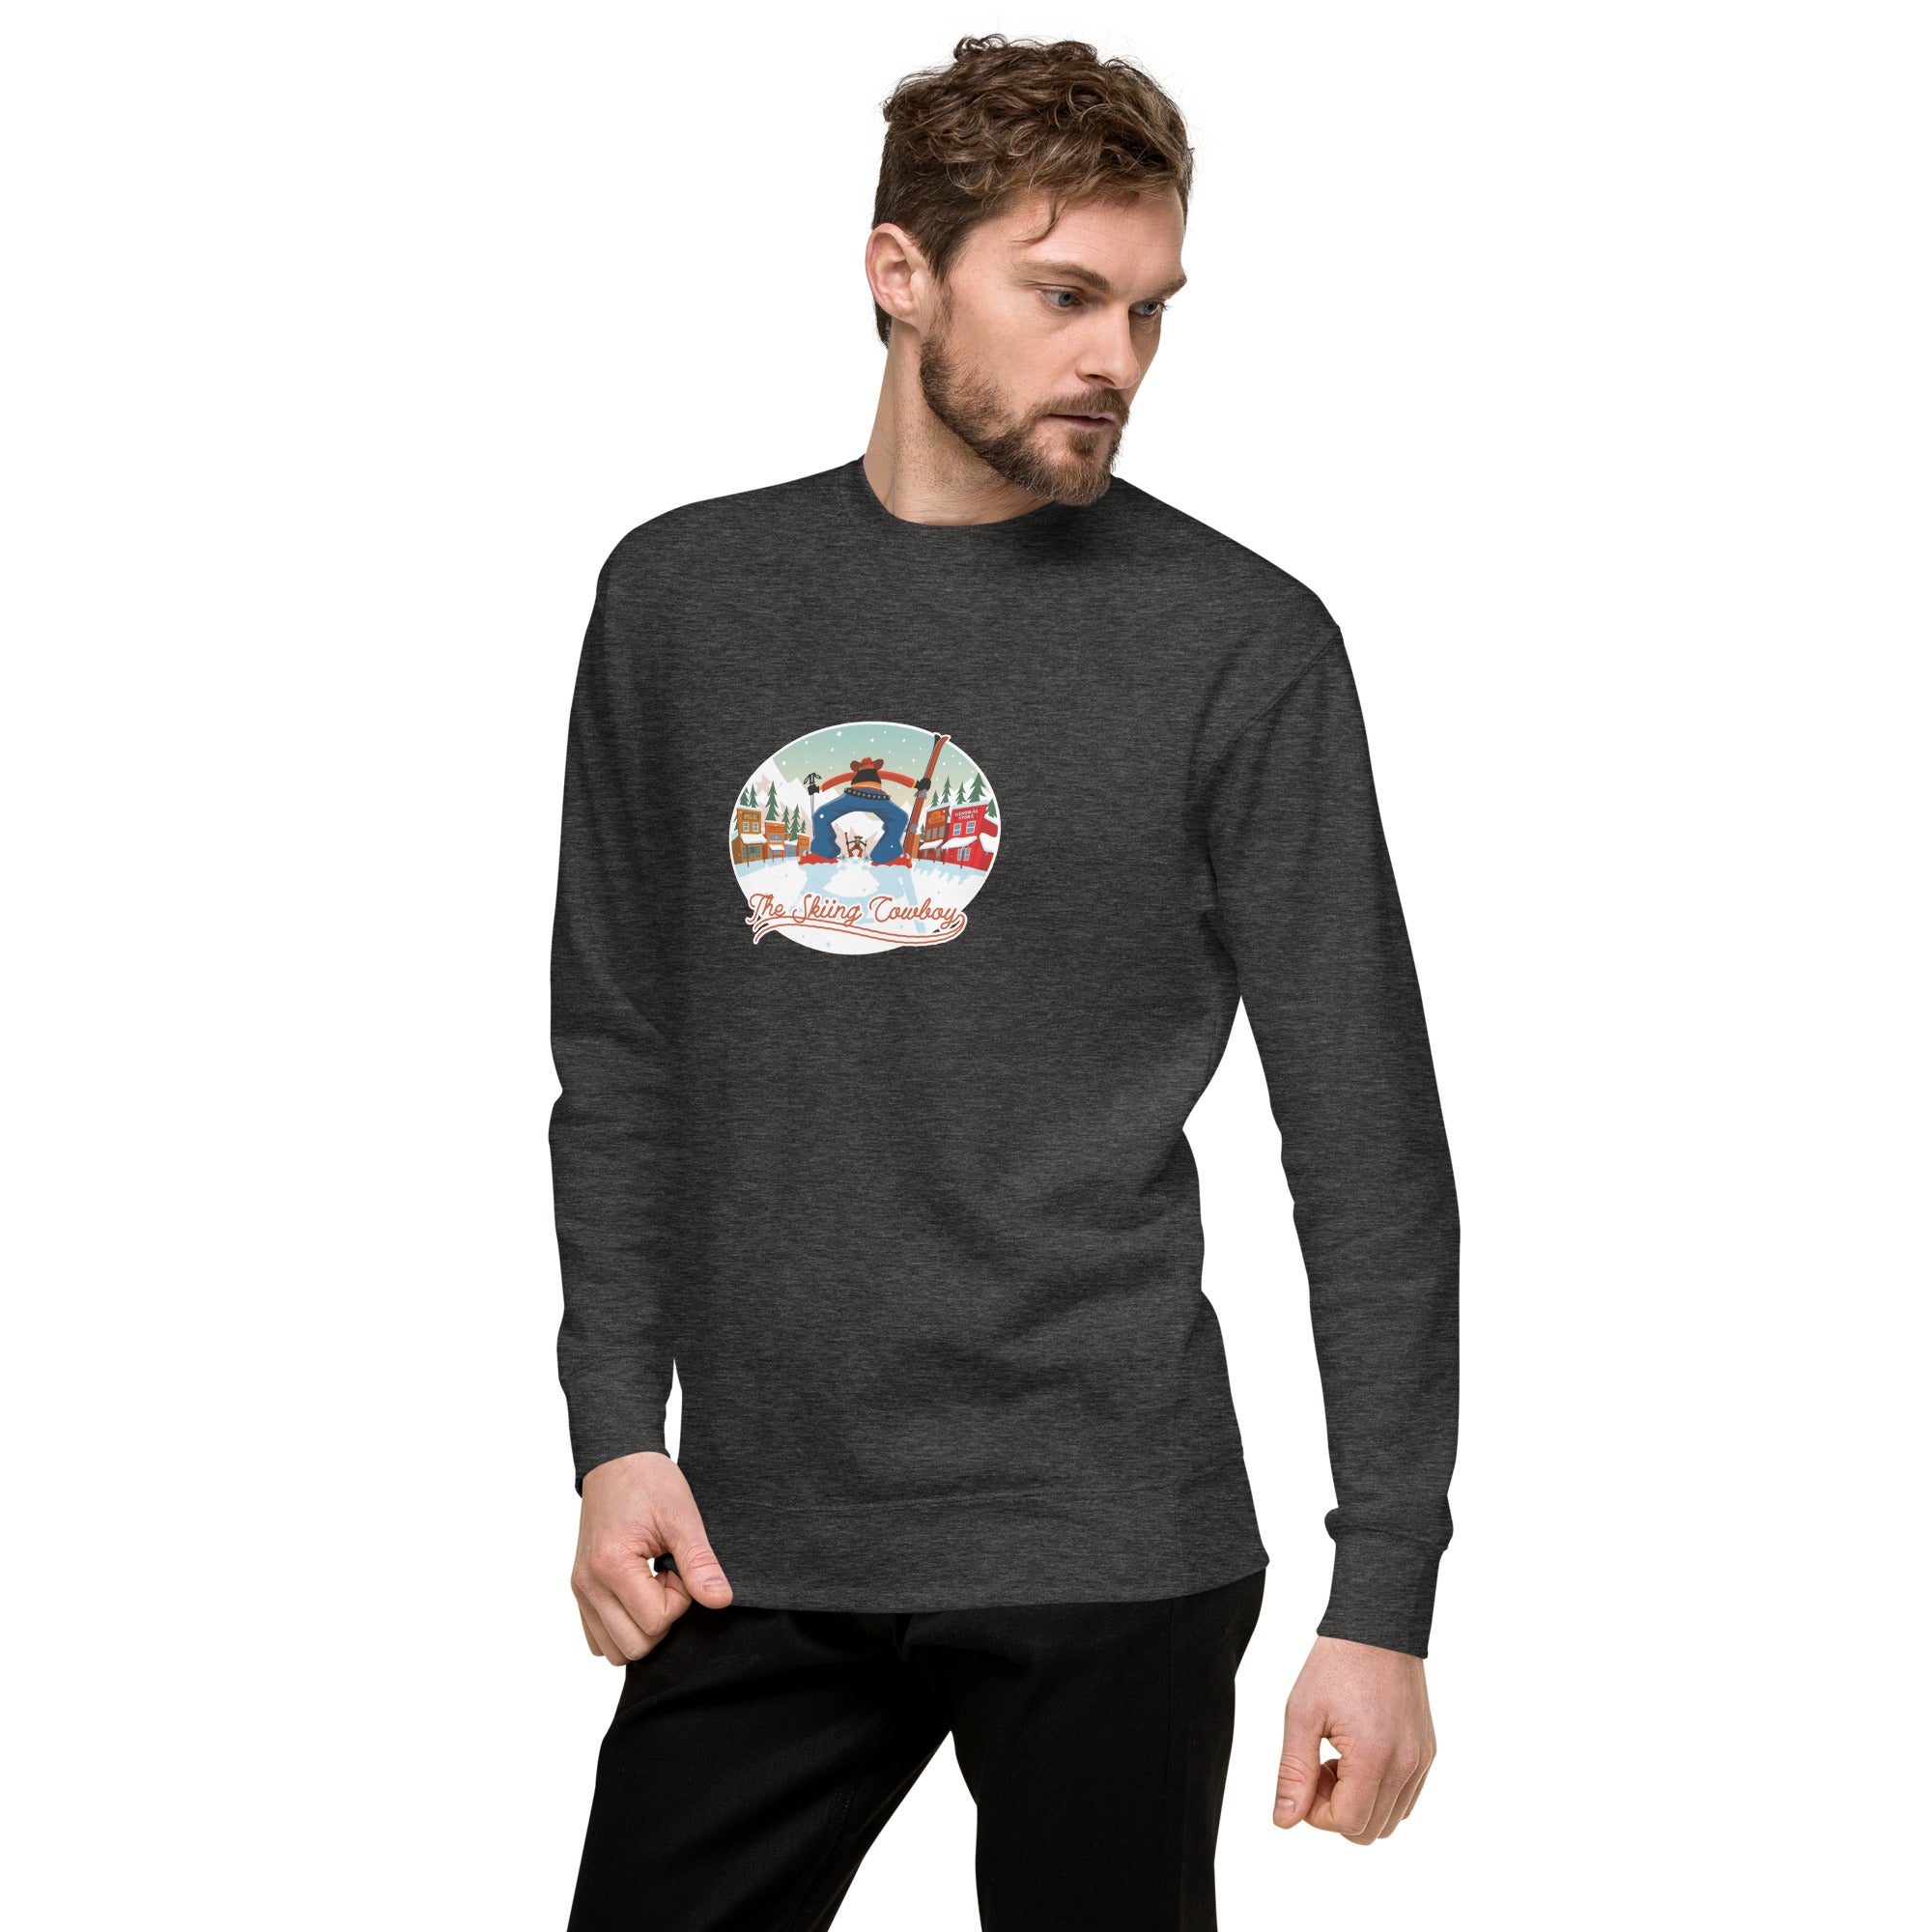 Unisex Premium Sweatshirt Ski Fight at OK Corral